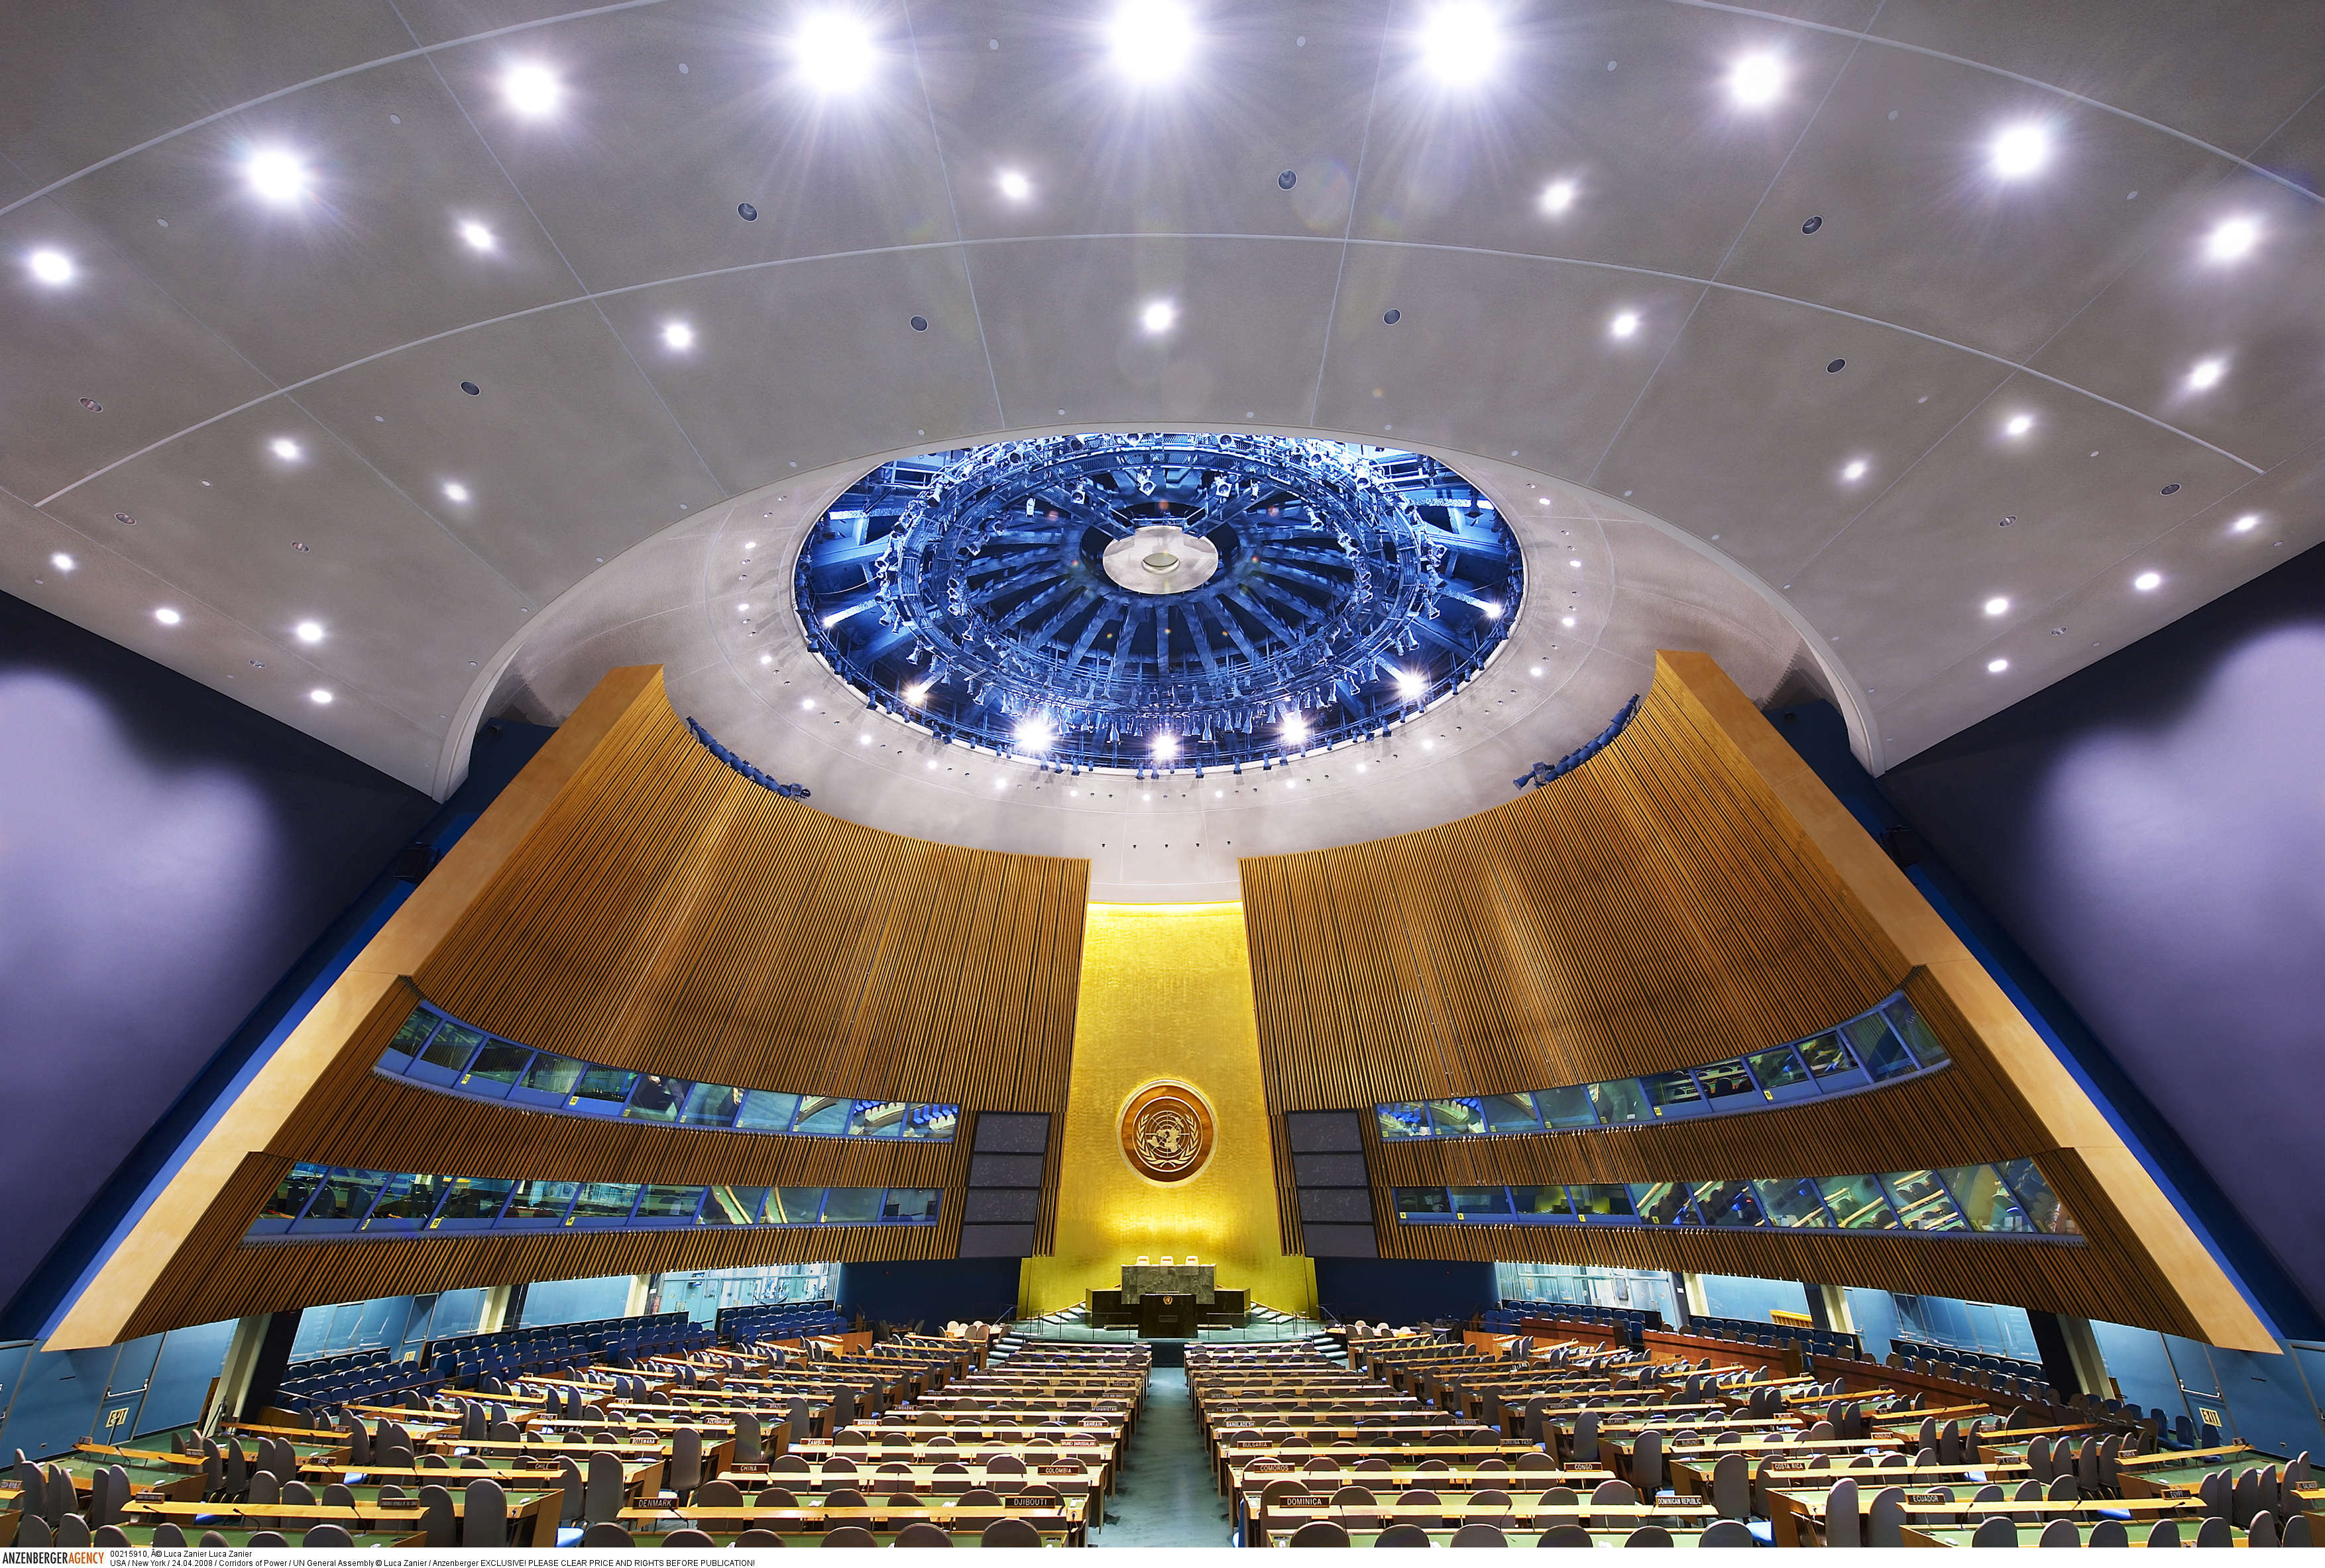 Тысячелетия оон. Зал Генеральной Ассамблеи ООН. Зал заседания Генеральной Ассамблеи ООН. Зал заседаний Генассамблеи ООН. Генеральная Ассамблея ООН (га ООН) трибуна.